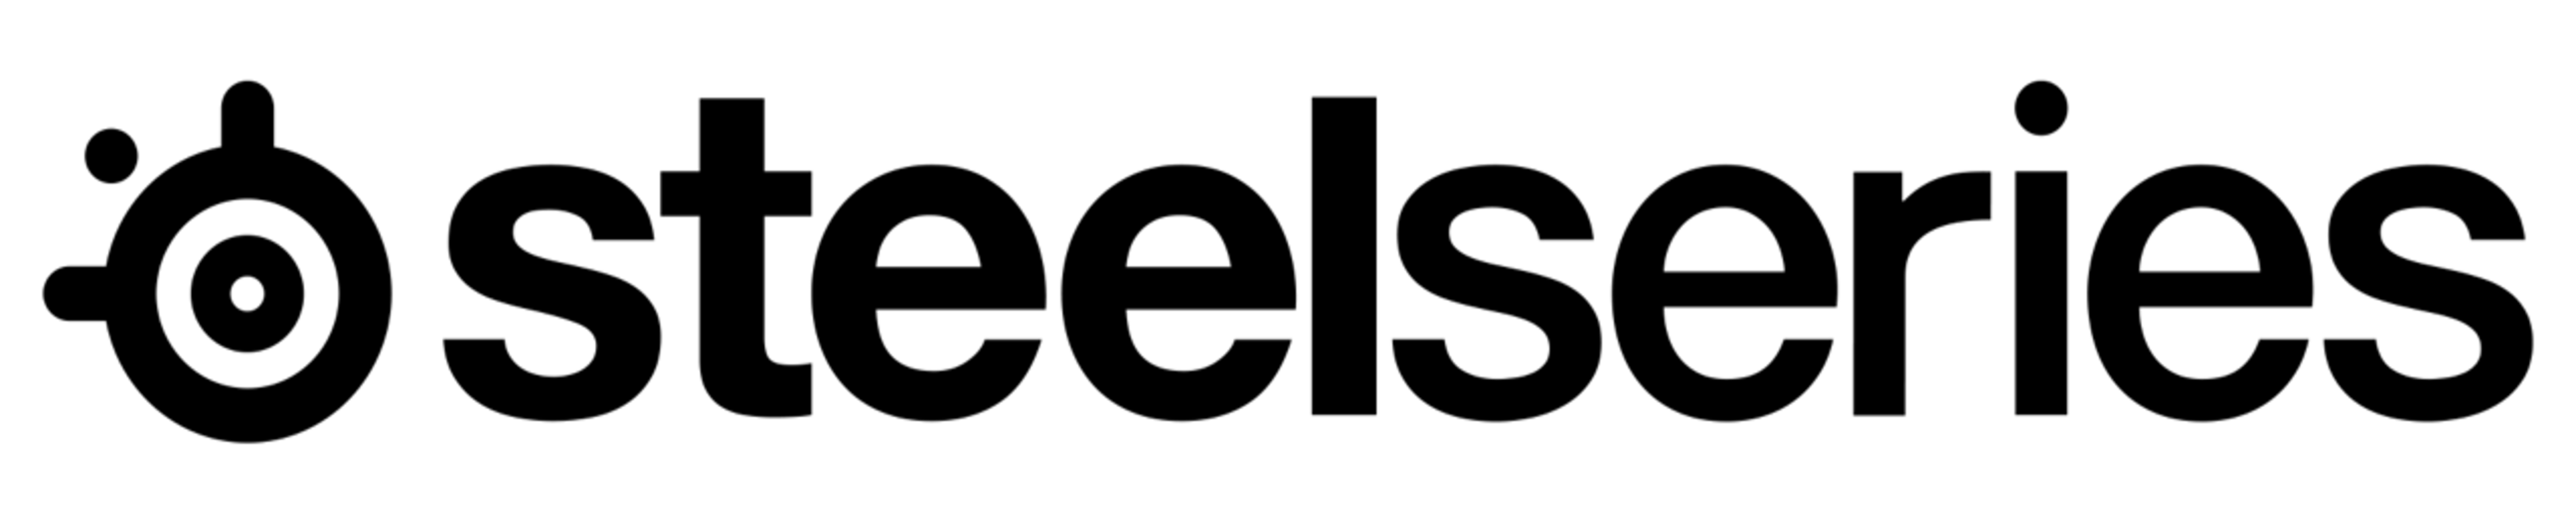 Arctis Pro logo